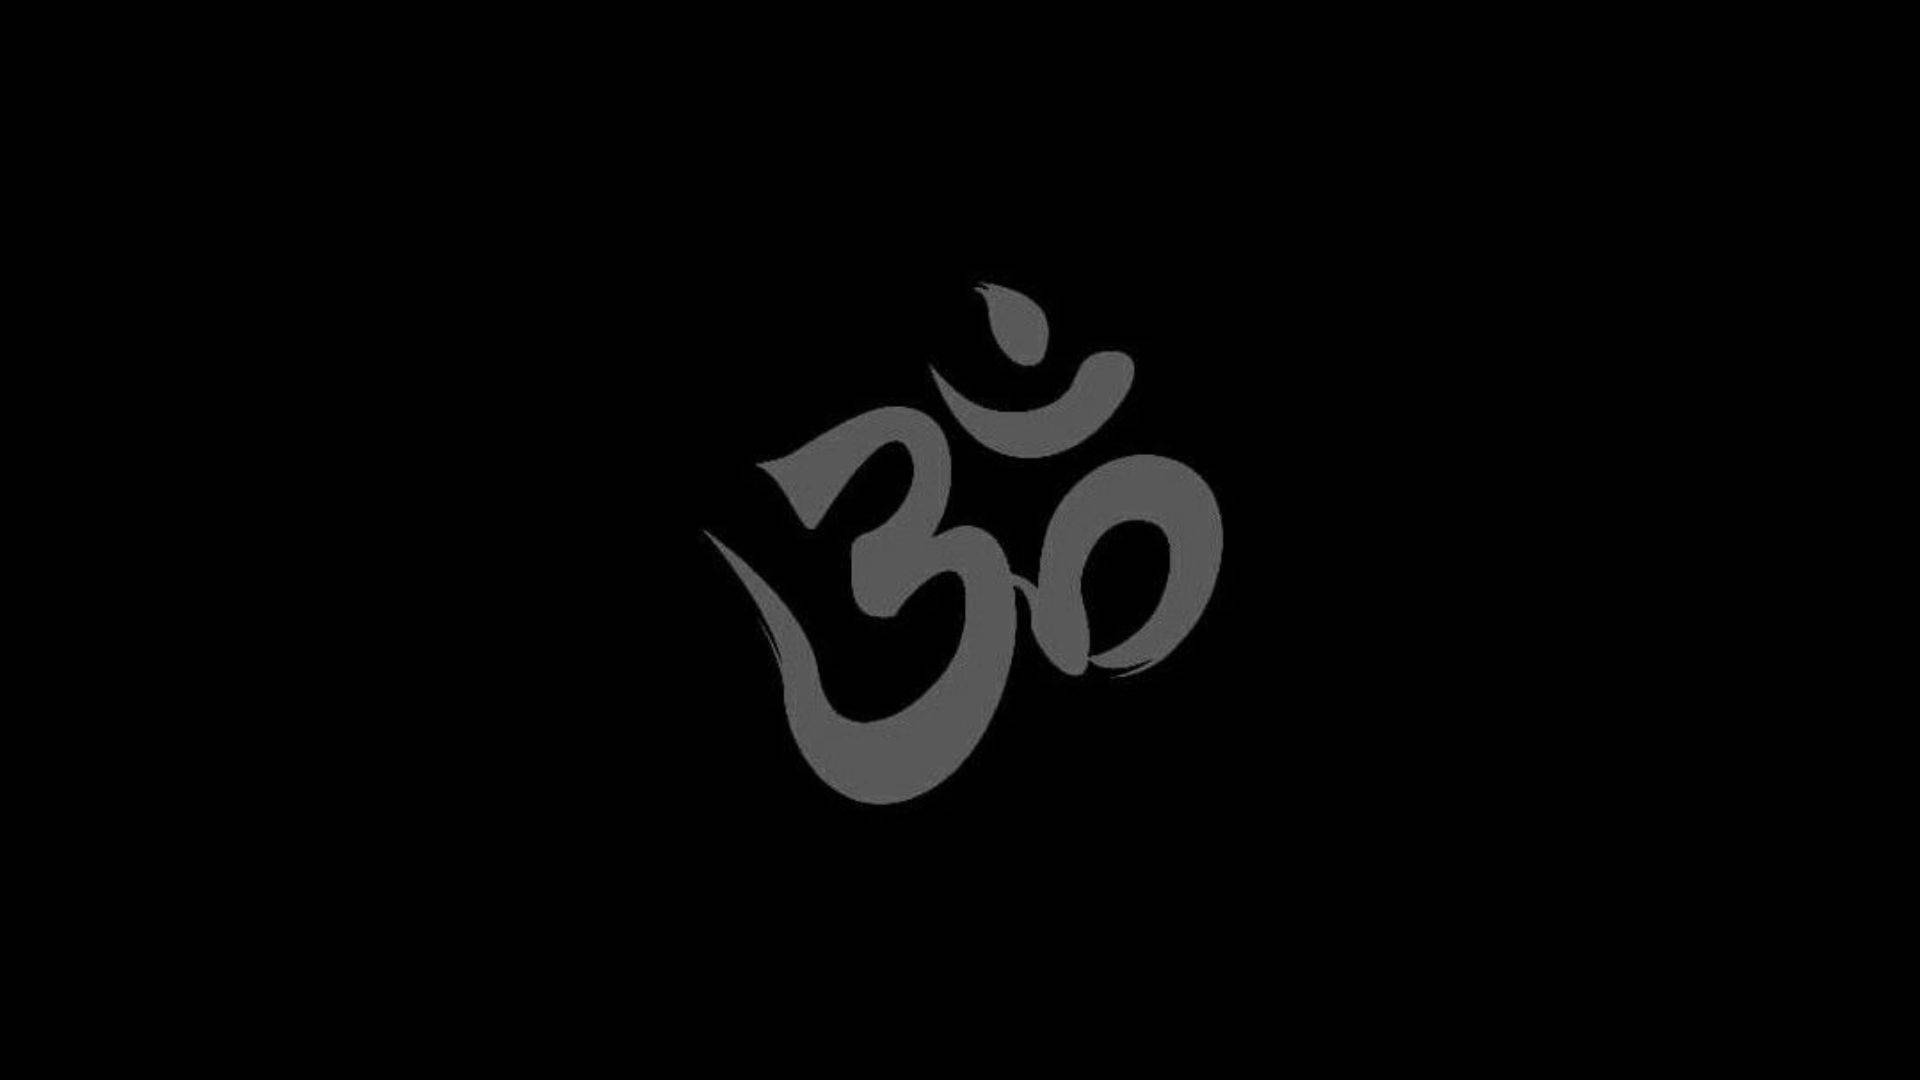 Cepillooscuro Del Símbolo Om De Shiva Fondo de pantalla